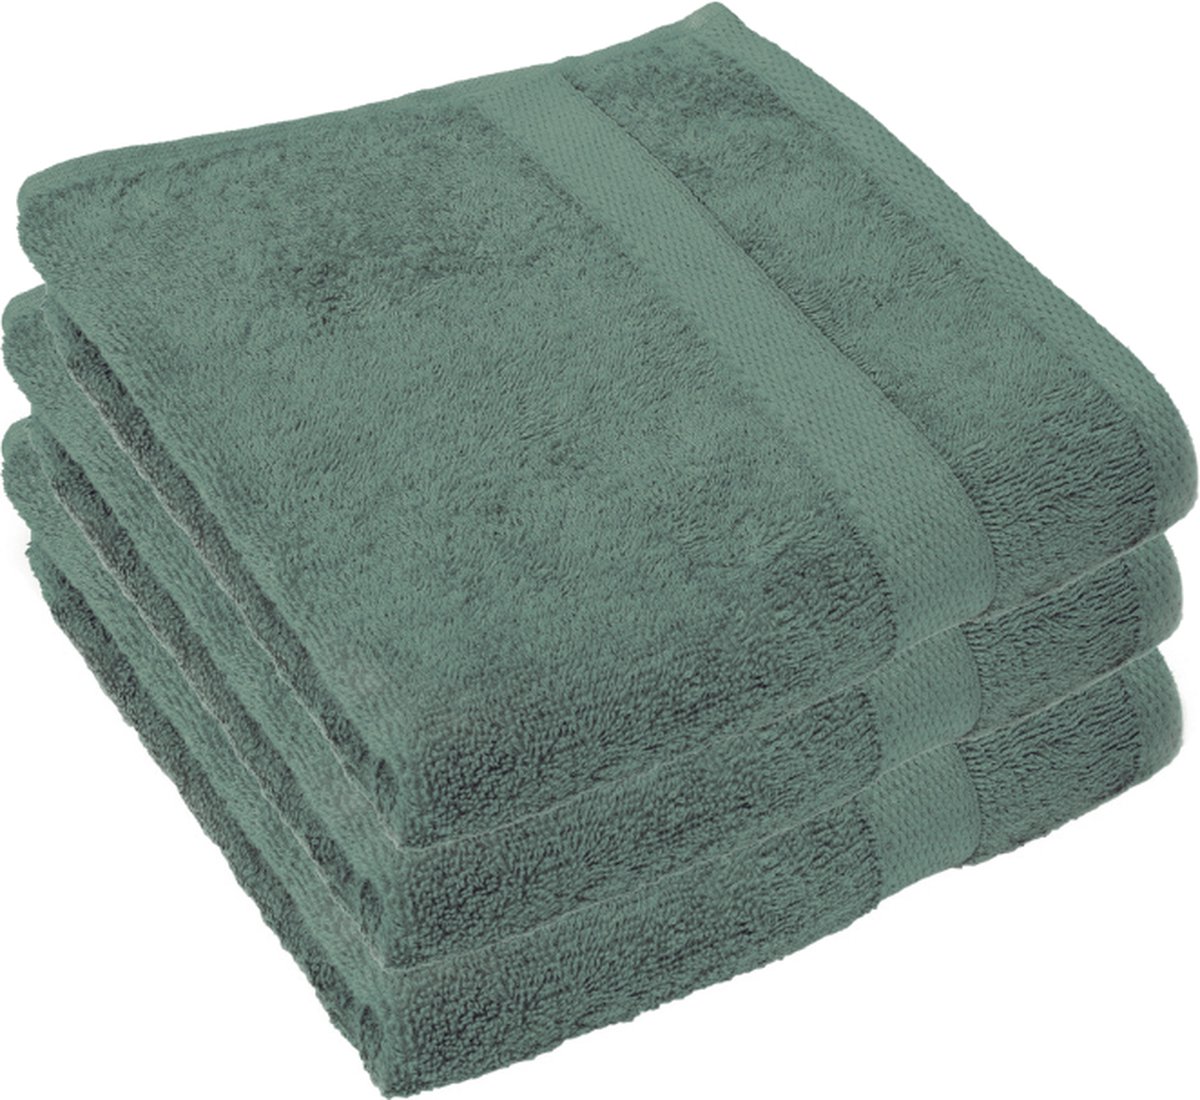 Handdoek - 70x140 cm - Groen - 450gr/m² - Extra zacht